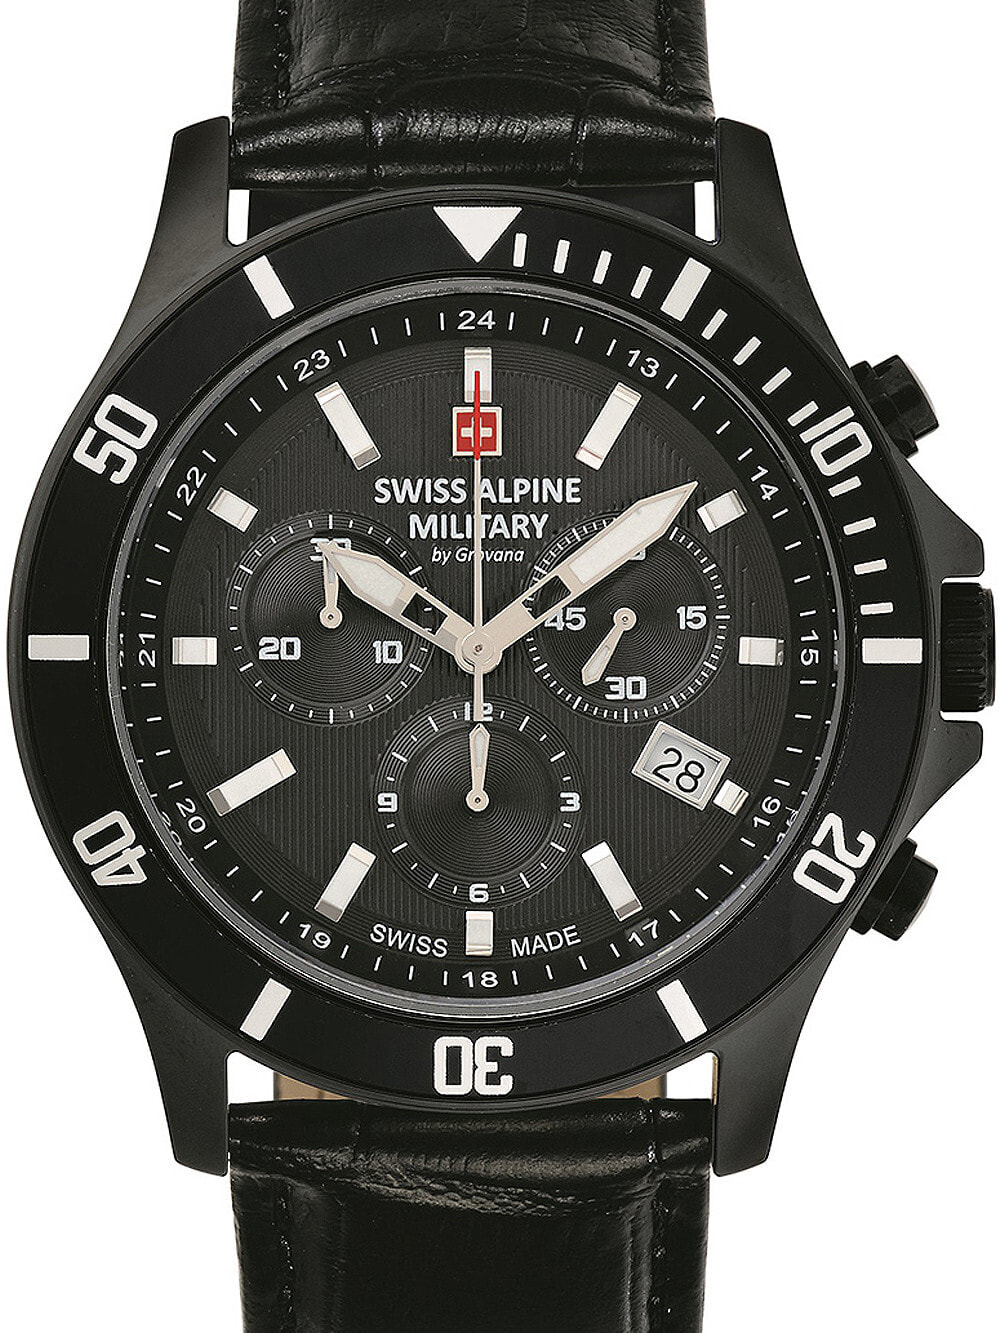 Мужские наручные часы с черным кожаным ремешком  Swiss Alpine Military 7022.9577 chronograph 42mm 10ATM